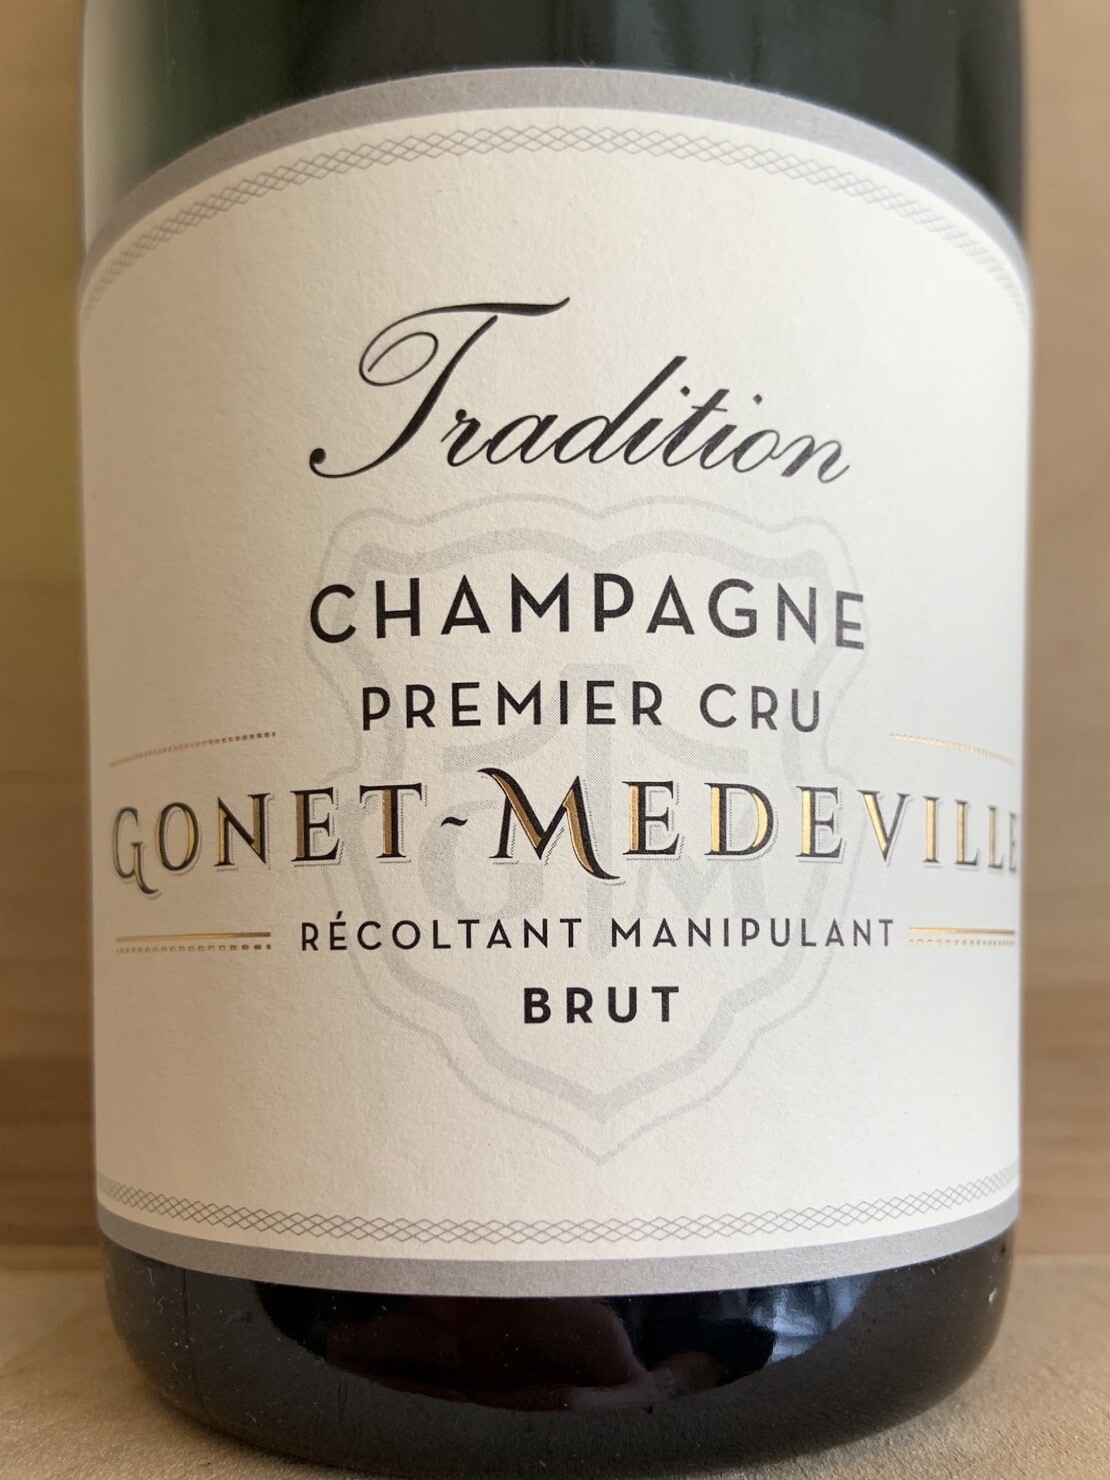 Gonet-Medeville Champagne Brut 1er Cru Tradition